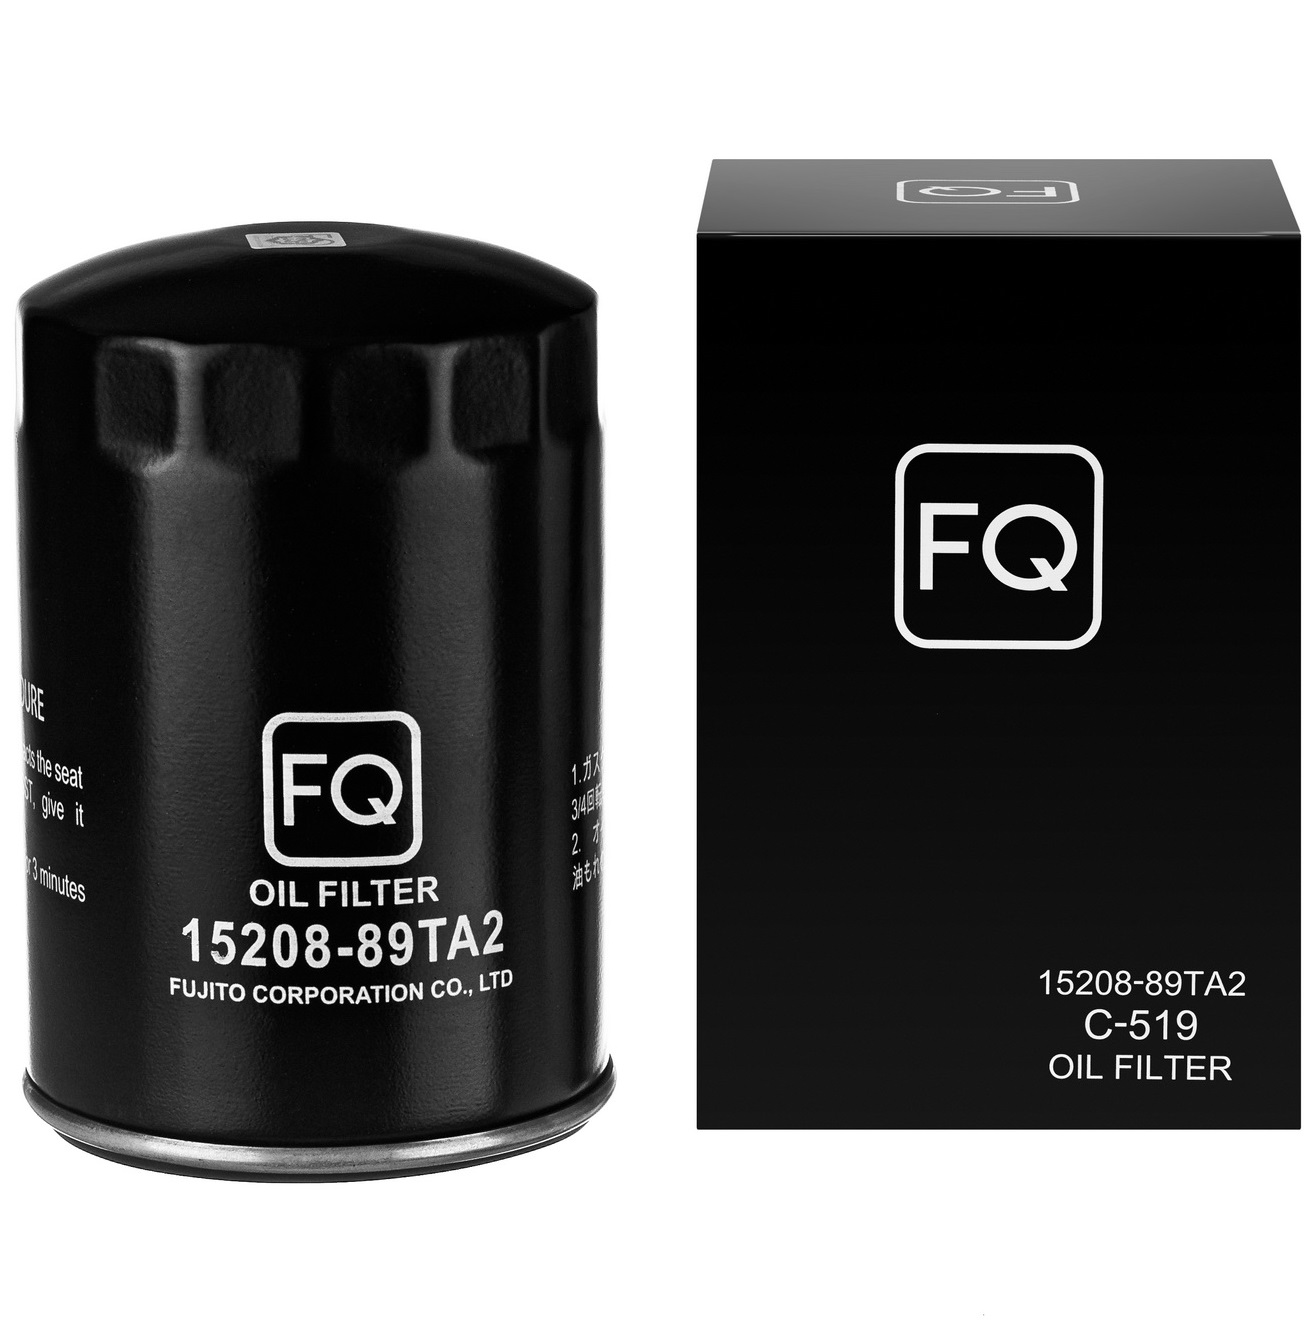 FQ, Фильтр масляный, C-519/15208-89TA2, Япония